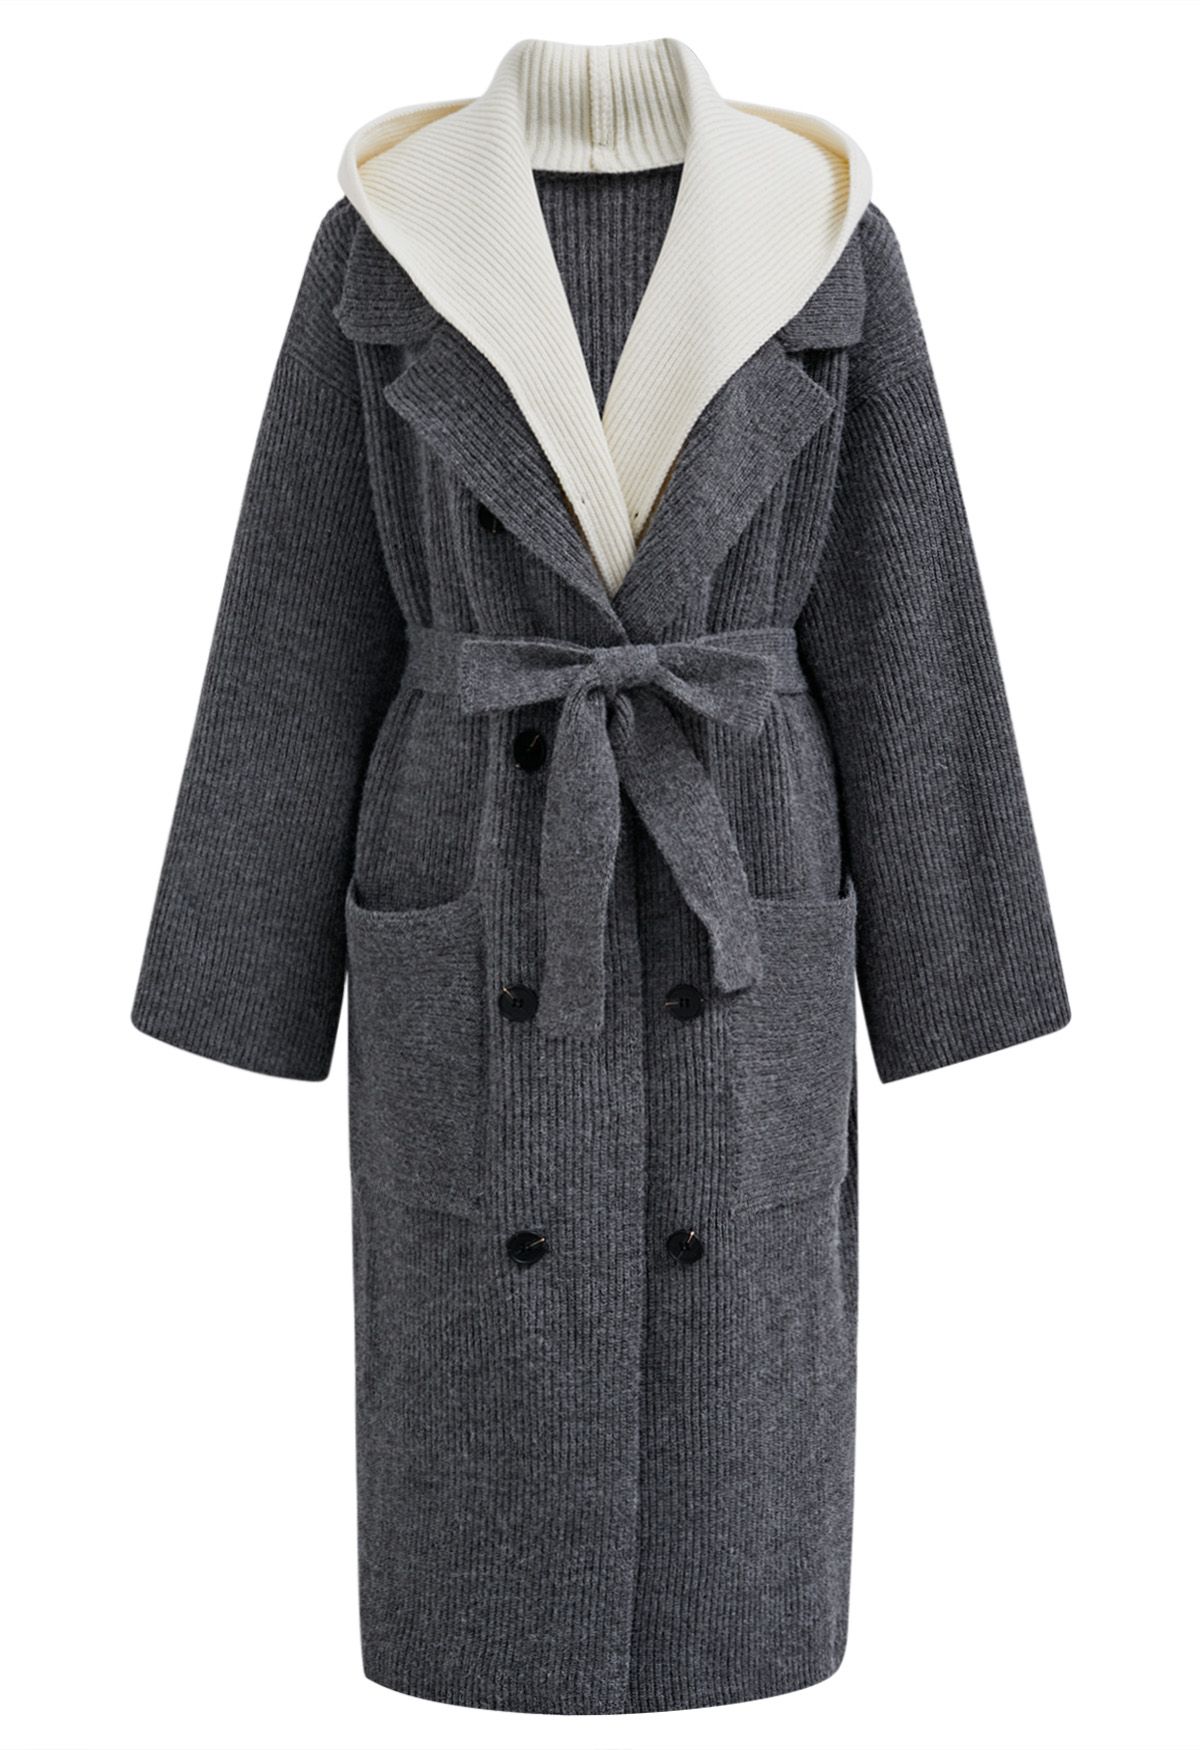 Kontrastierter, zweiteiliger, langer Mantel mit Kapuze in Grau